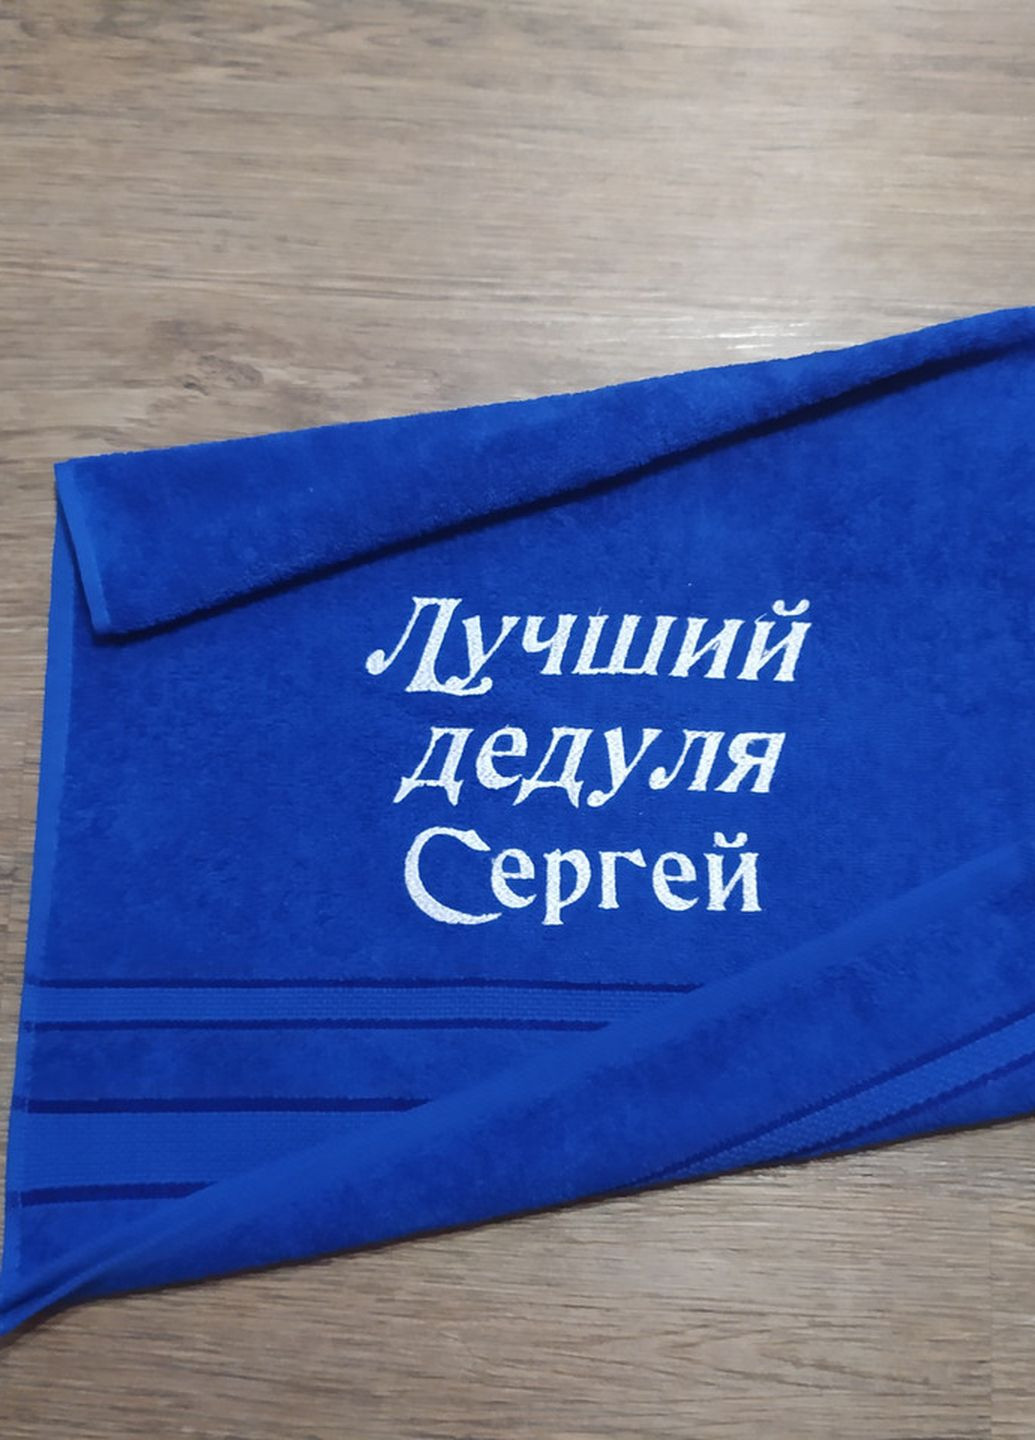 No Brand полотенце с именной вышивкой махровое лицевое 50*90 синий дедушке сергей 04262 однотонный синий производство - Украина